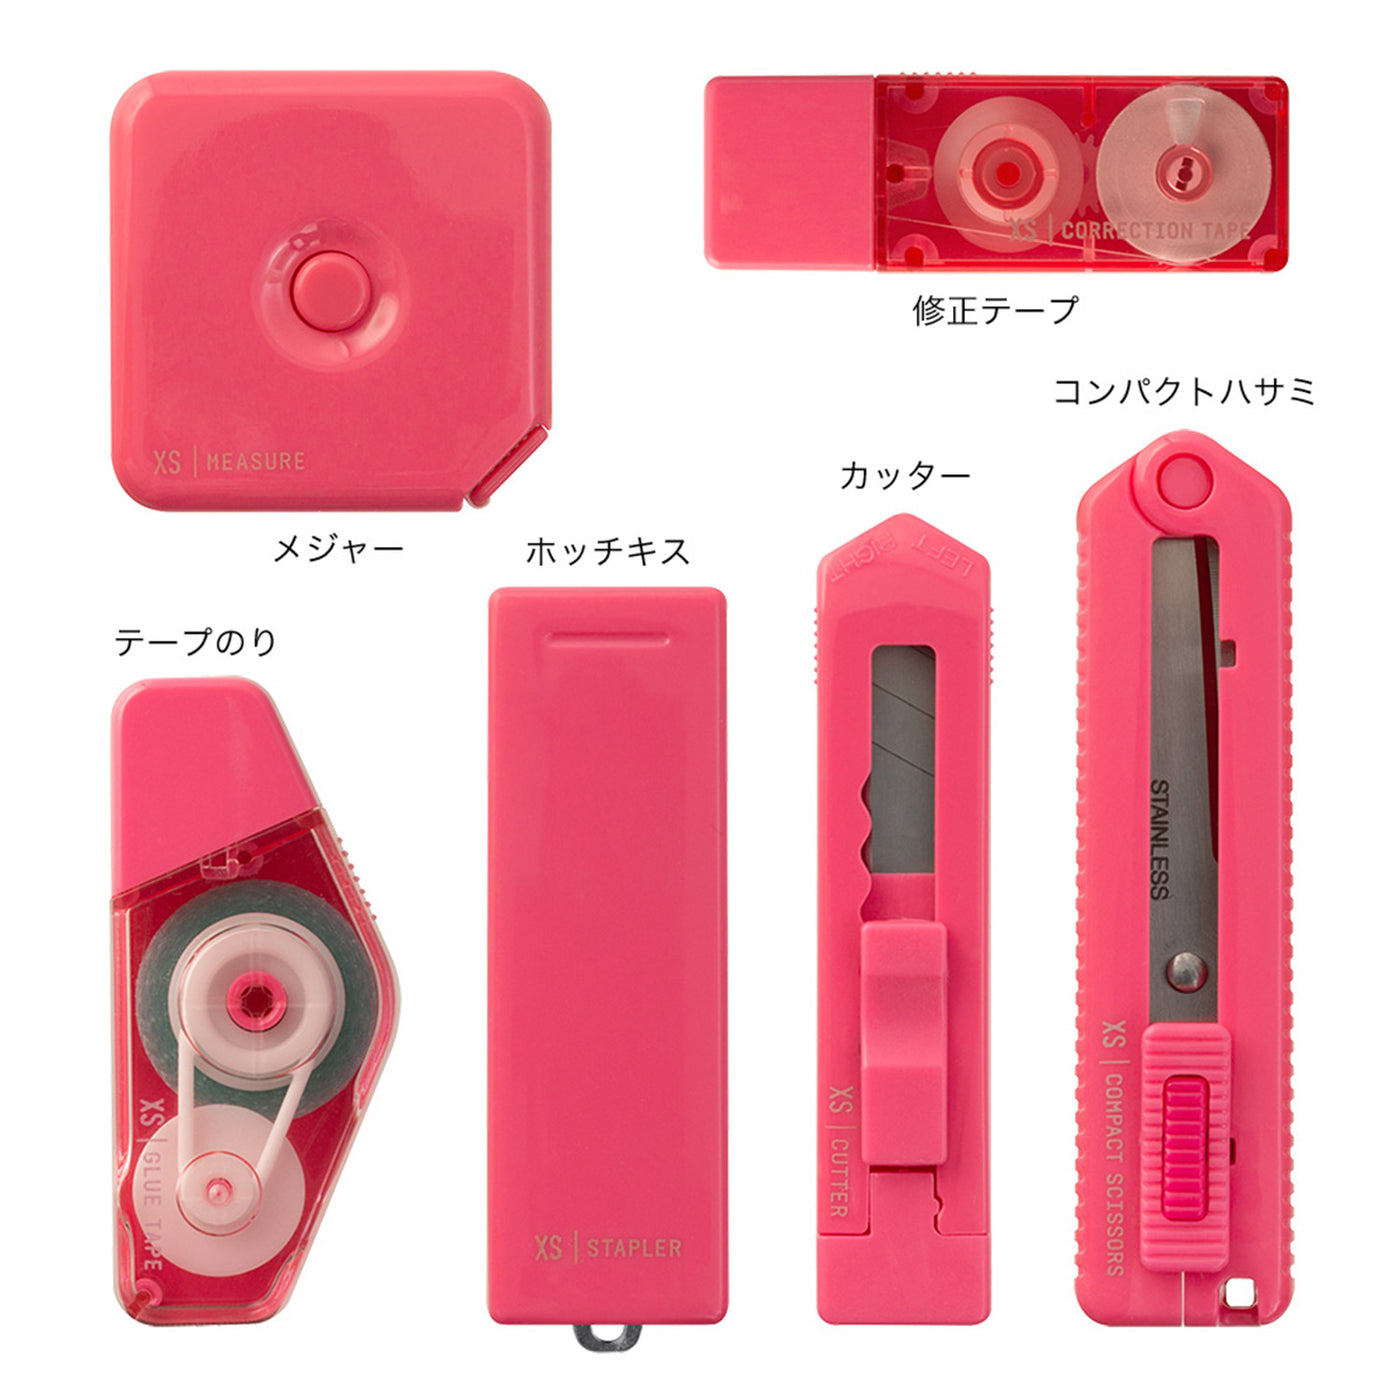 Midori XS Stationery Kit - Pink